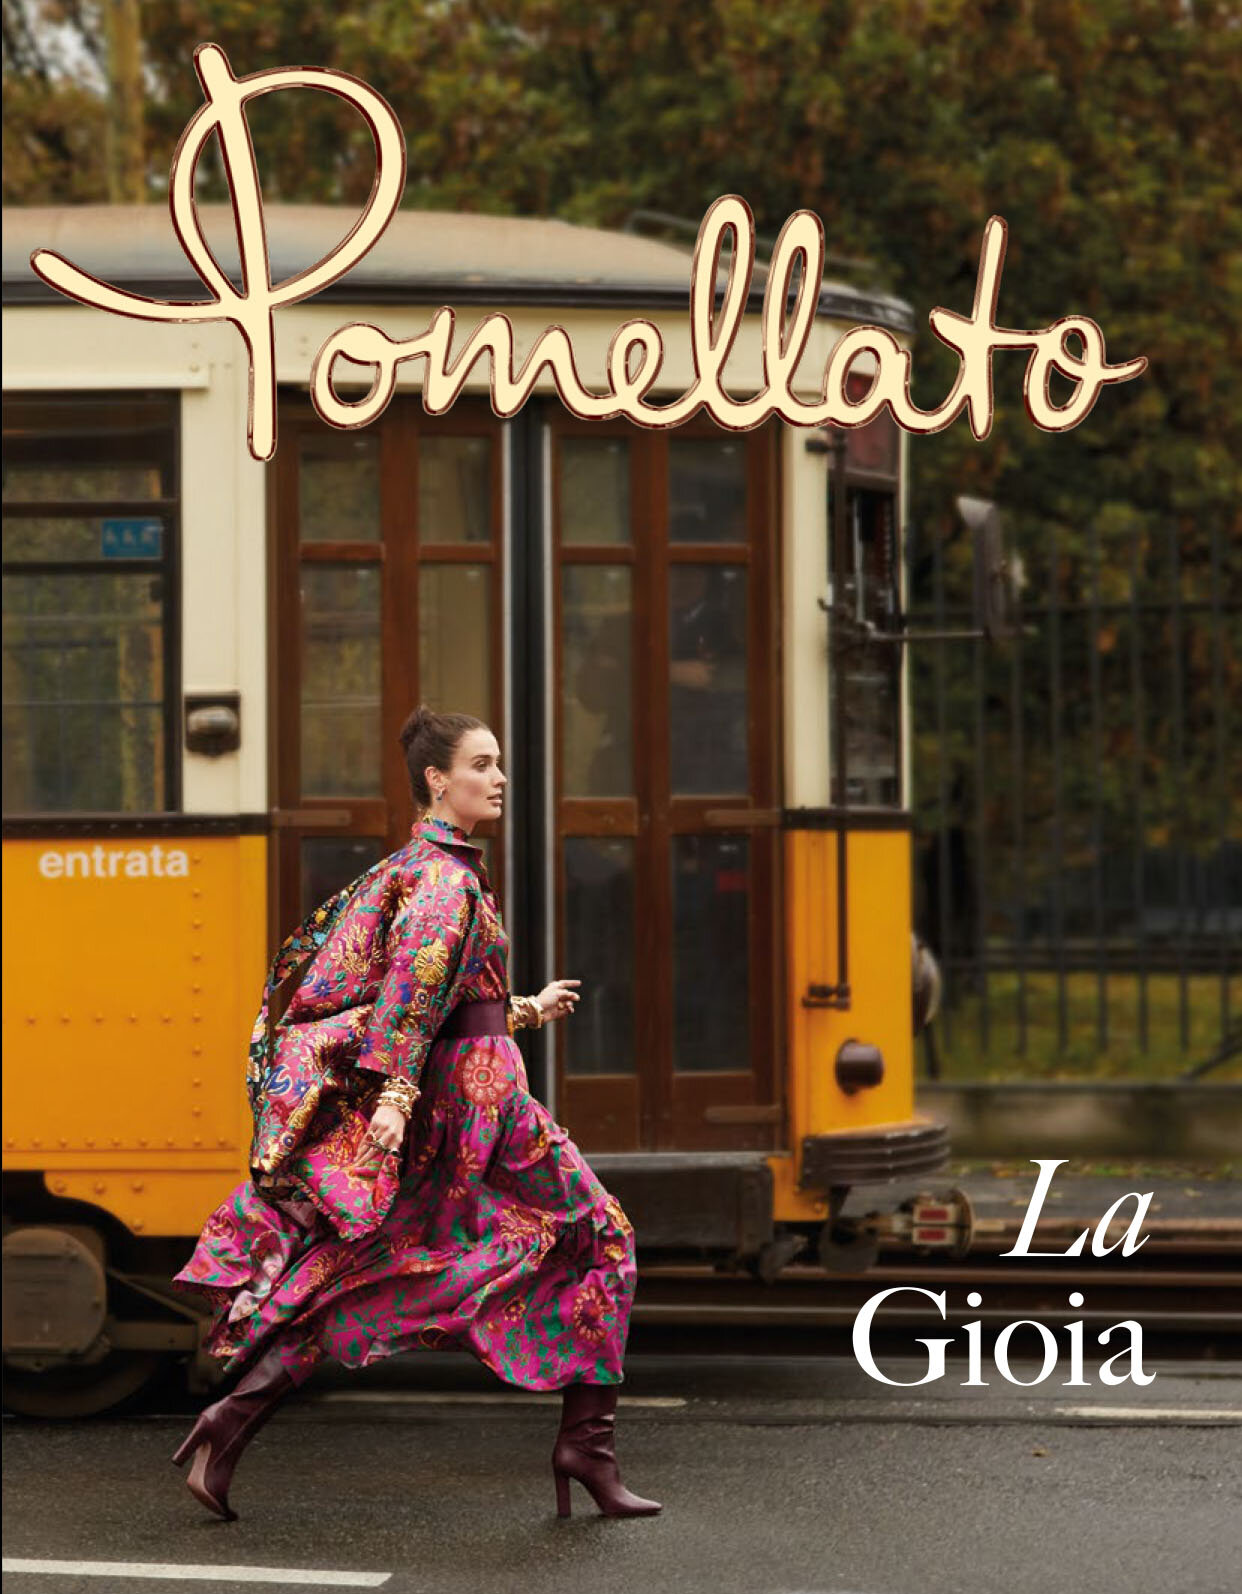 All pdf_Pomellato La Gioia Issue_2203-1.jpg